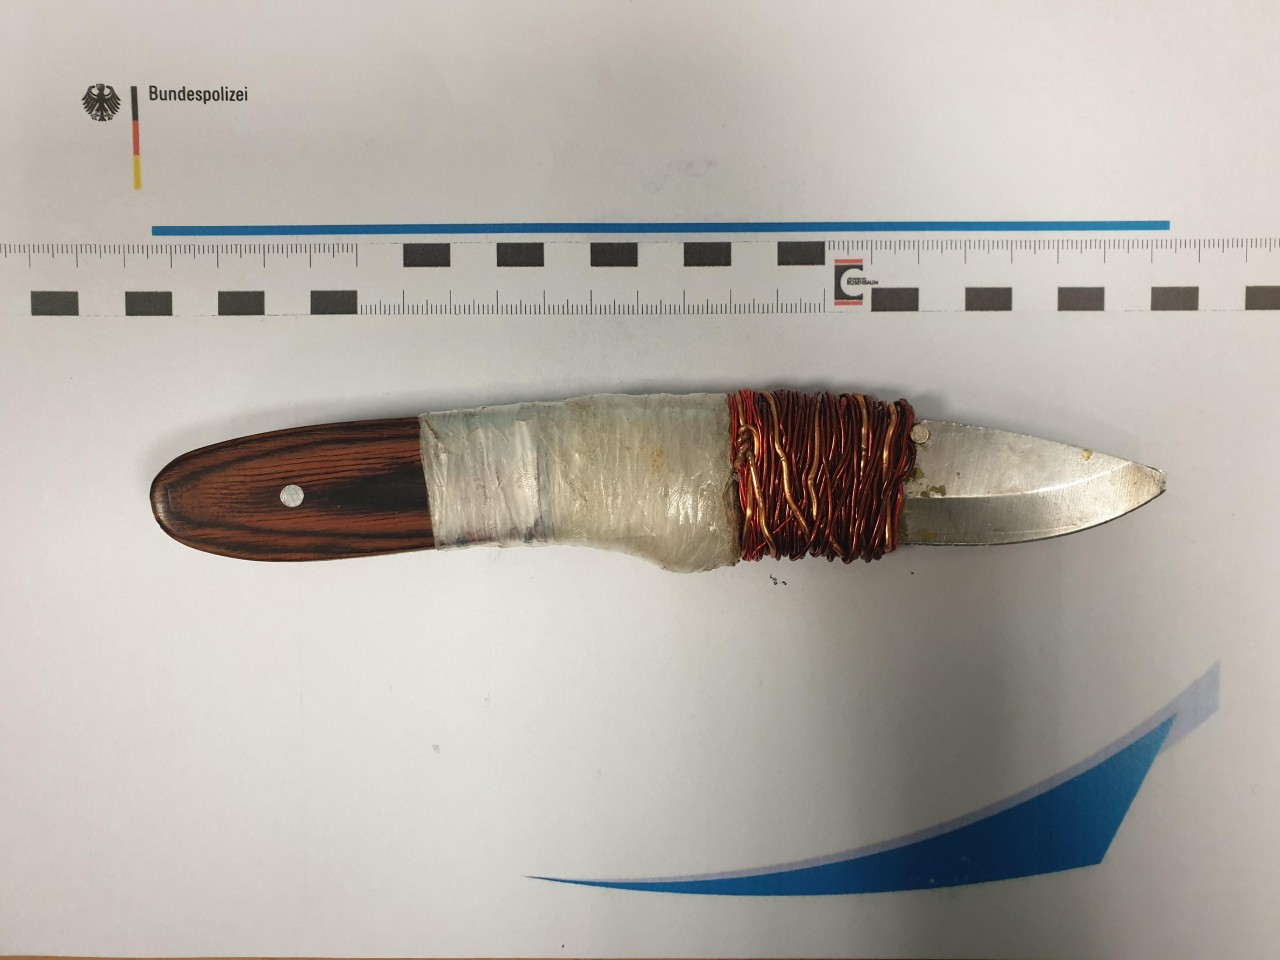 Dieses aus mehreren Messer-Einzelteilen zusammengebaute Messer stellte die Polizei in Dortmund bei einem Mann sicher. 